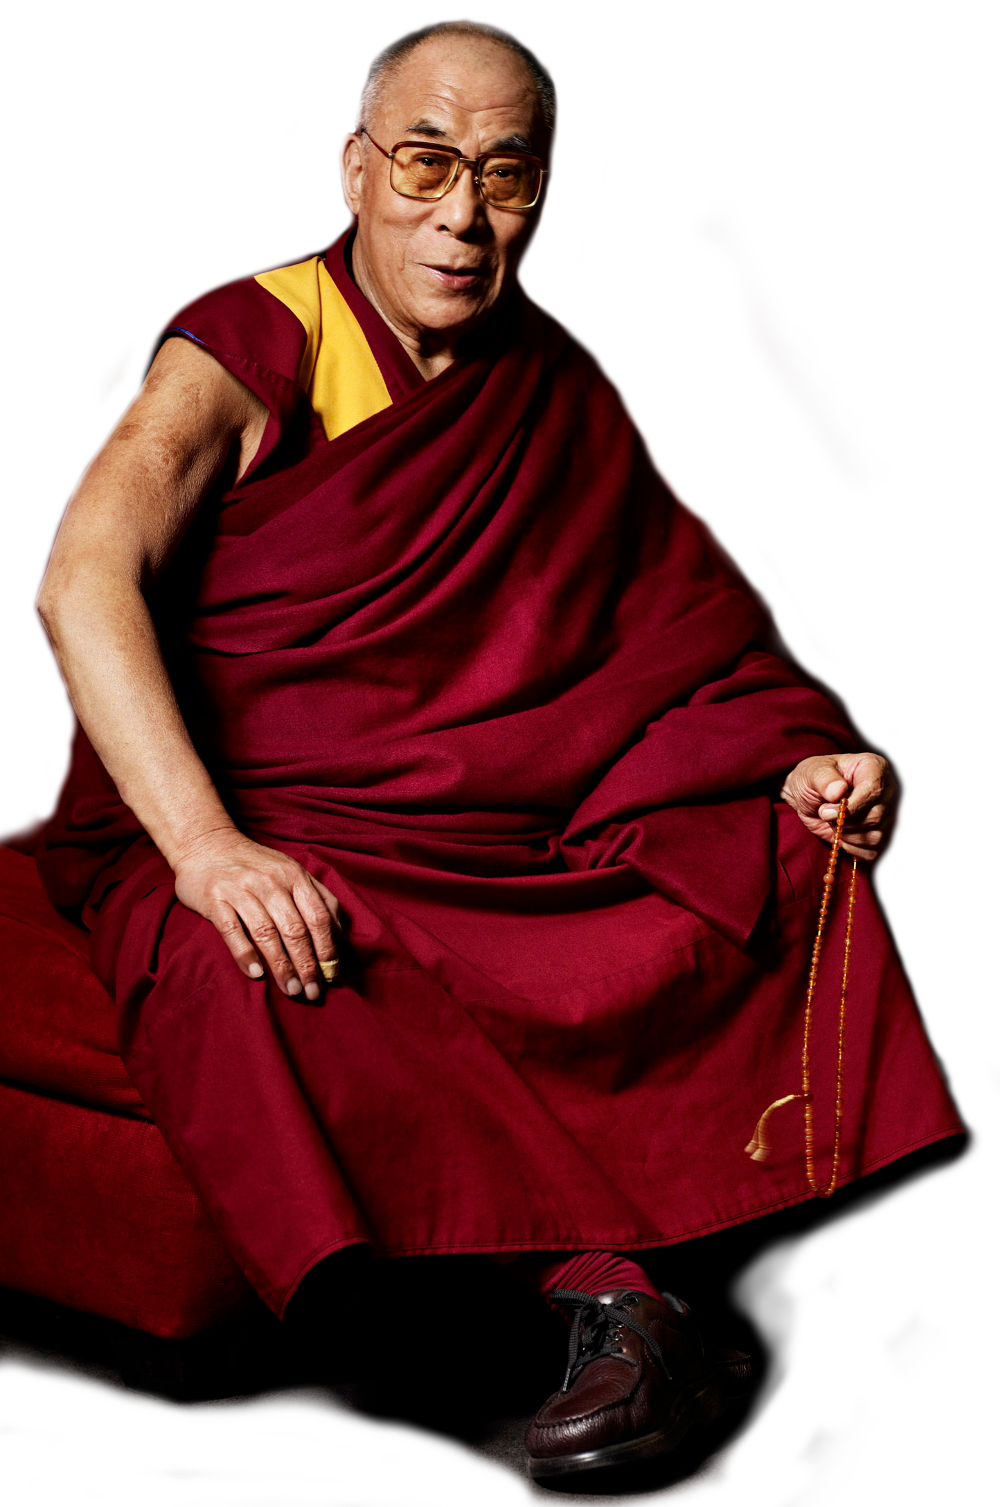 Dalai Lama PNG изображения фон